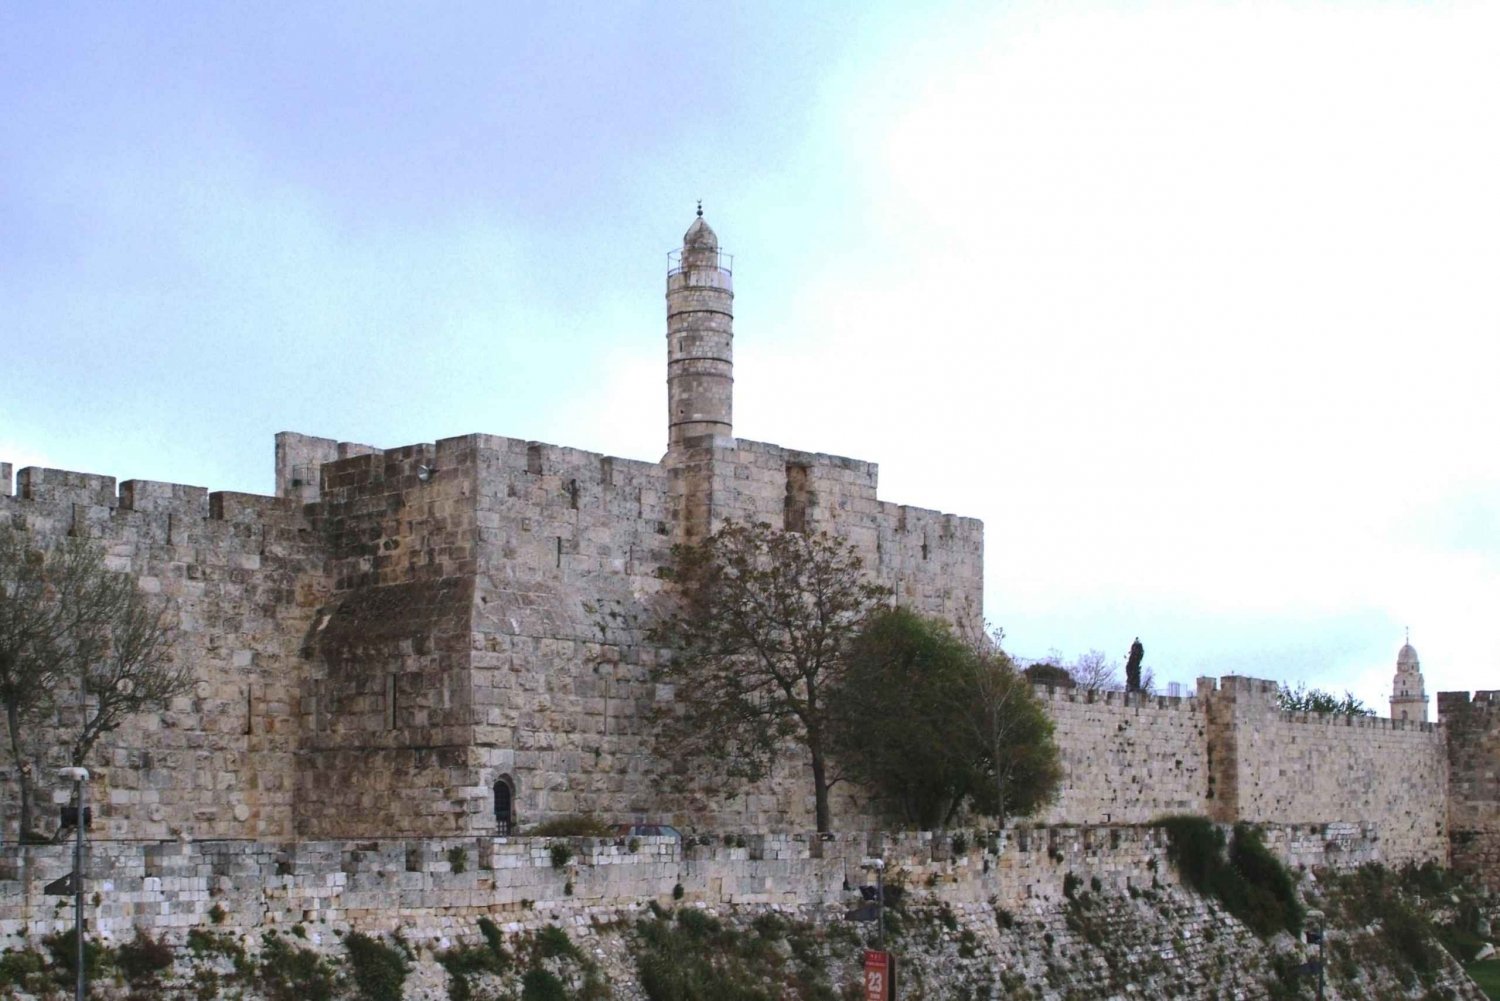 Privat rundvisning i Jerusalem for kristne